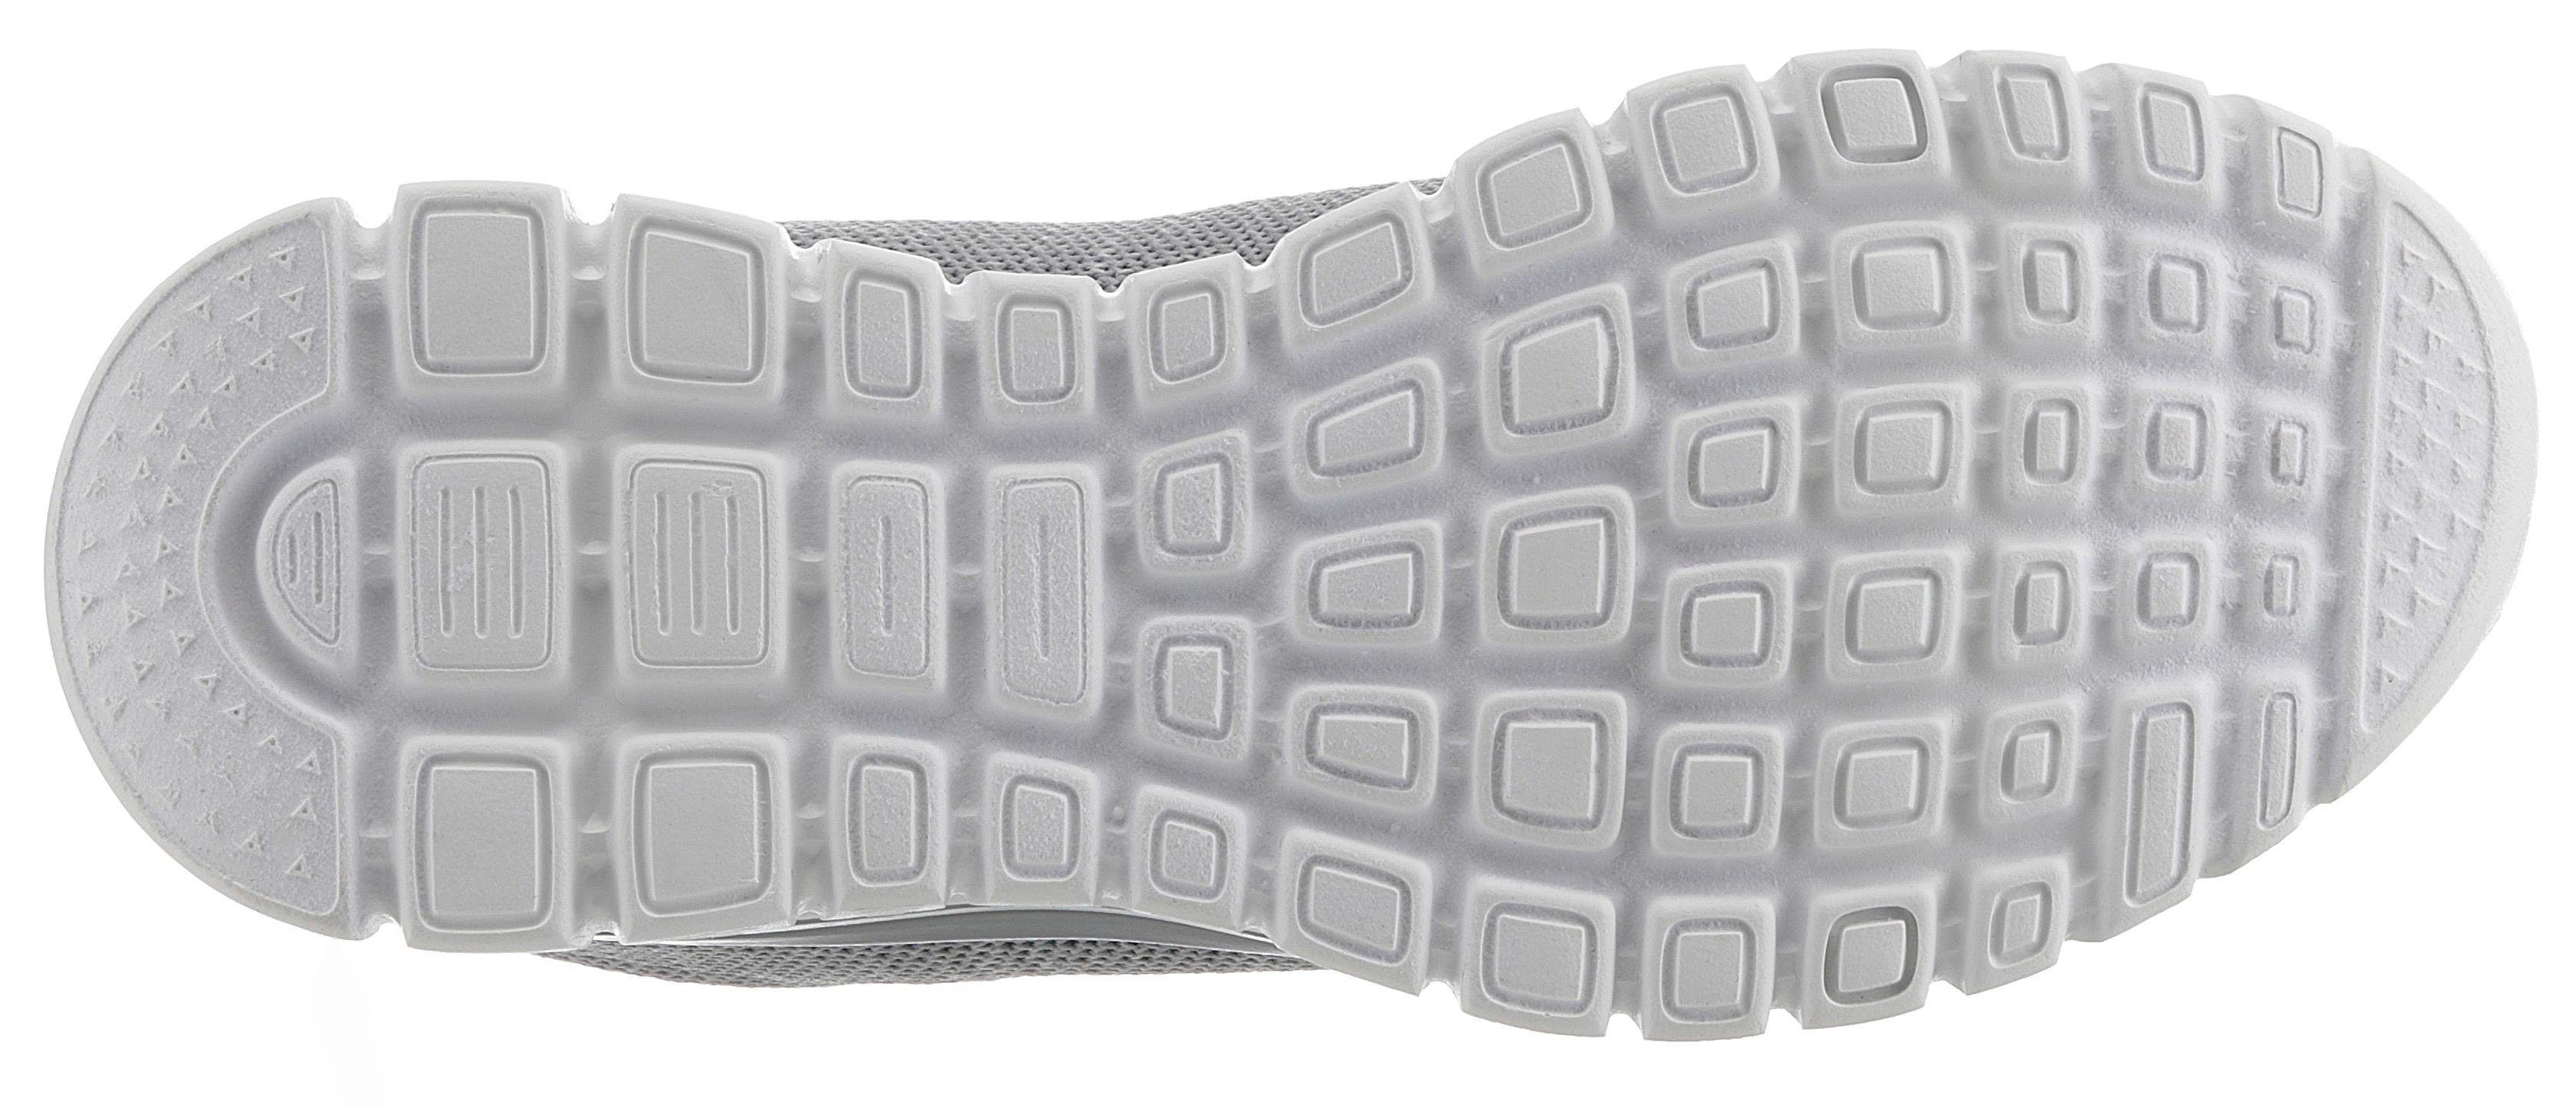 Skechers Graceful - Foam grau-mint Twisted Fortune mit Sneaker Memory